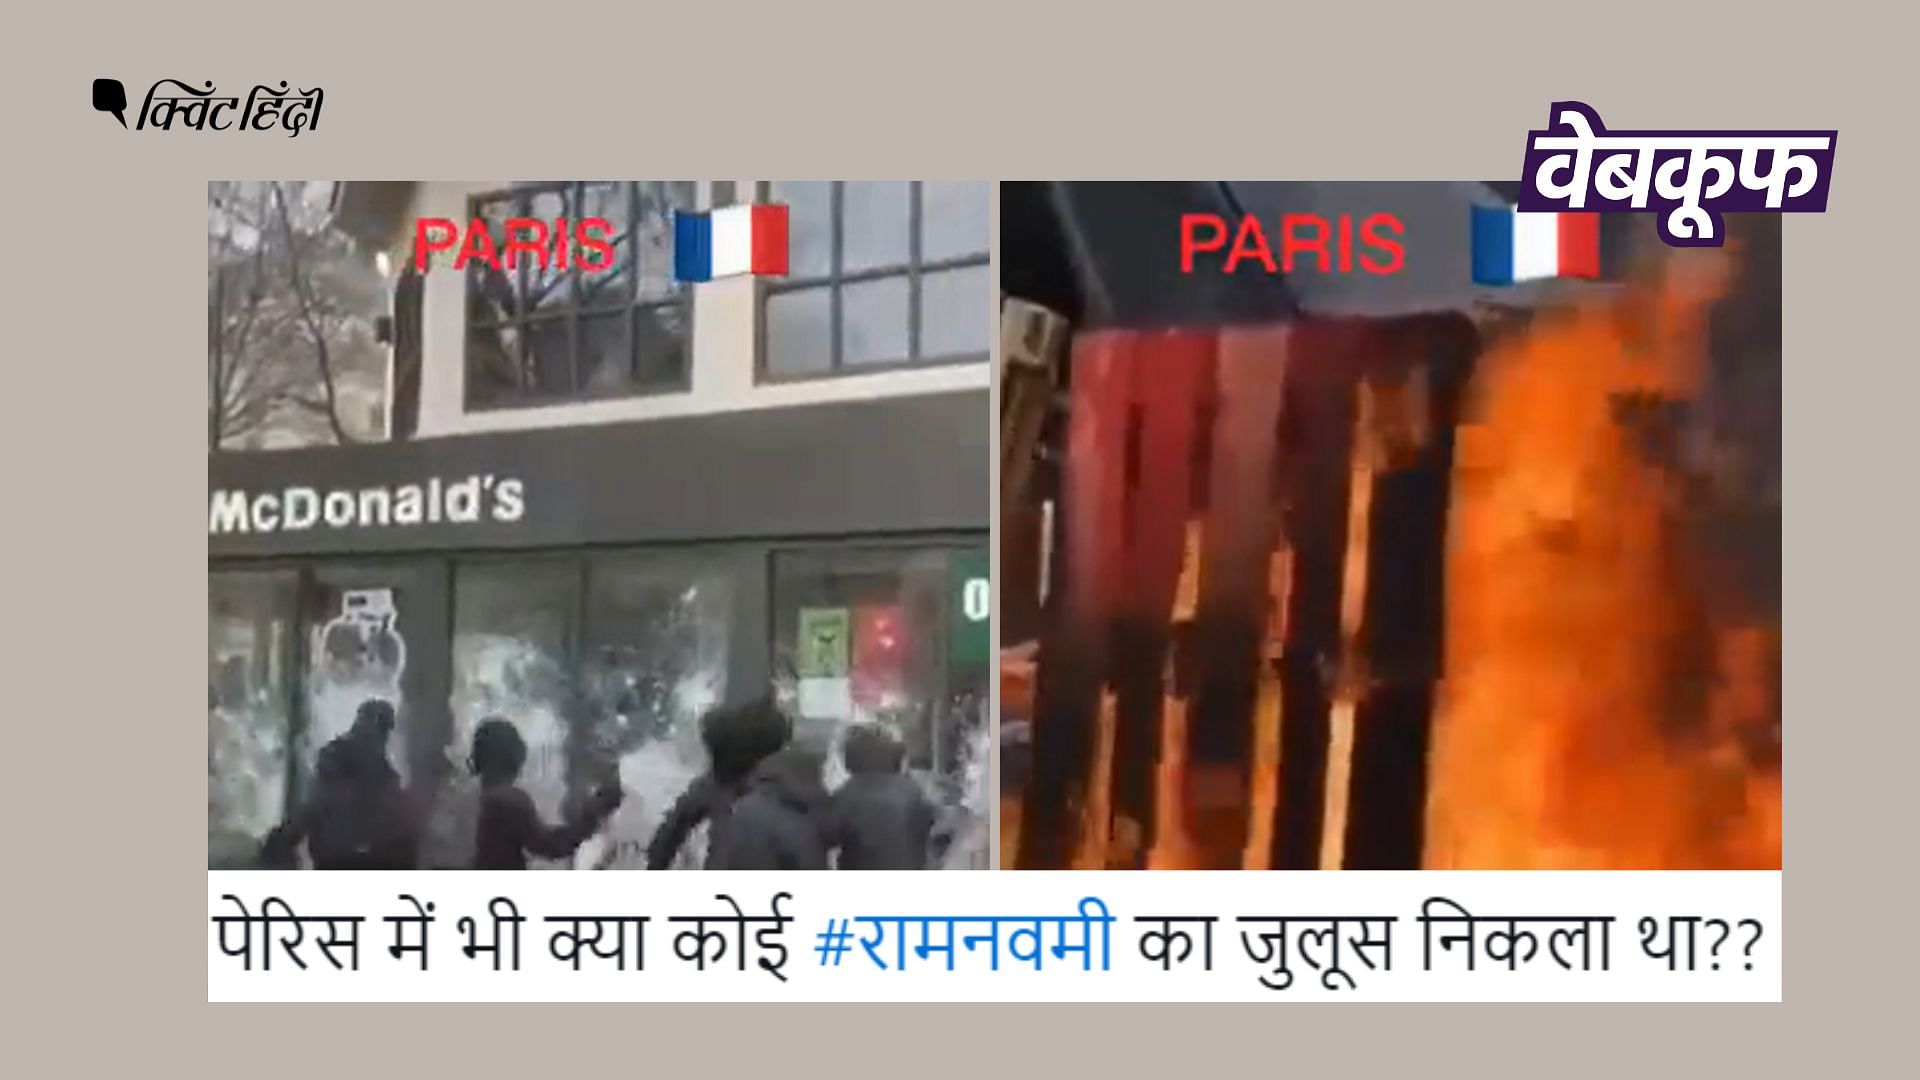 <div class="paragraphs"><p>वीडियो शेयर कर दावा किया जा रहा है कि पेरिस में 'प्रवासियों' ने ये अराजकता फैलाई है.</p></div>